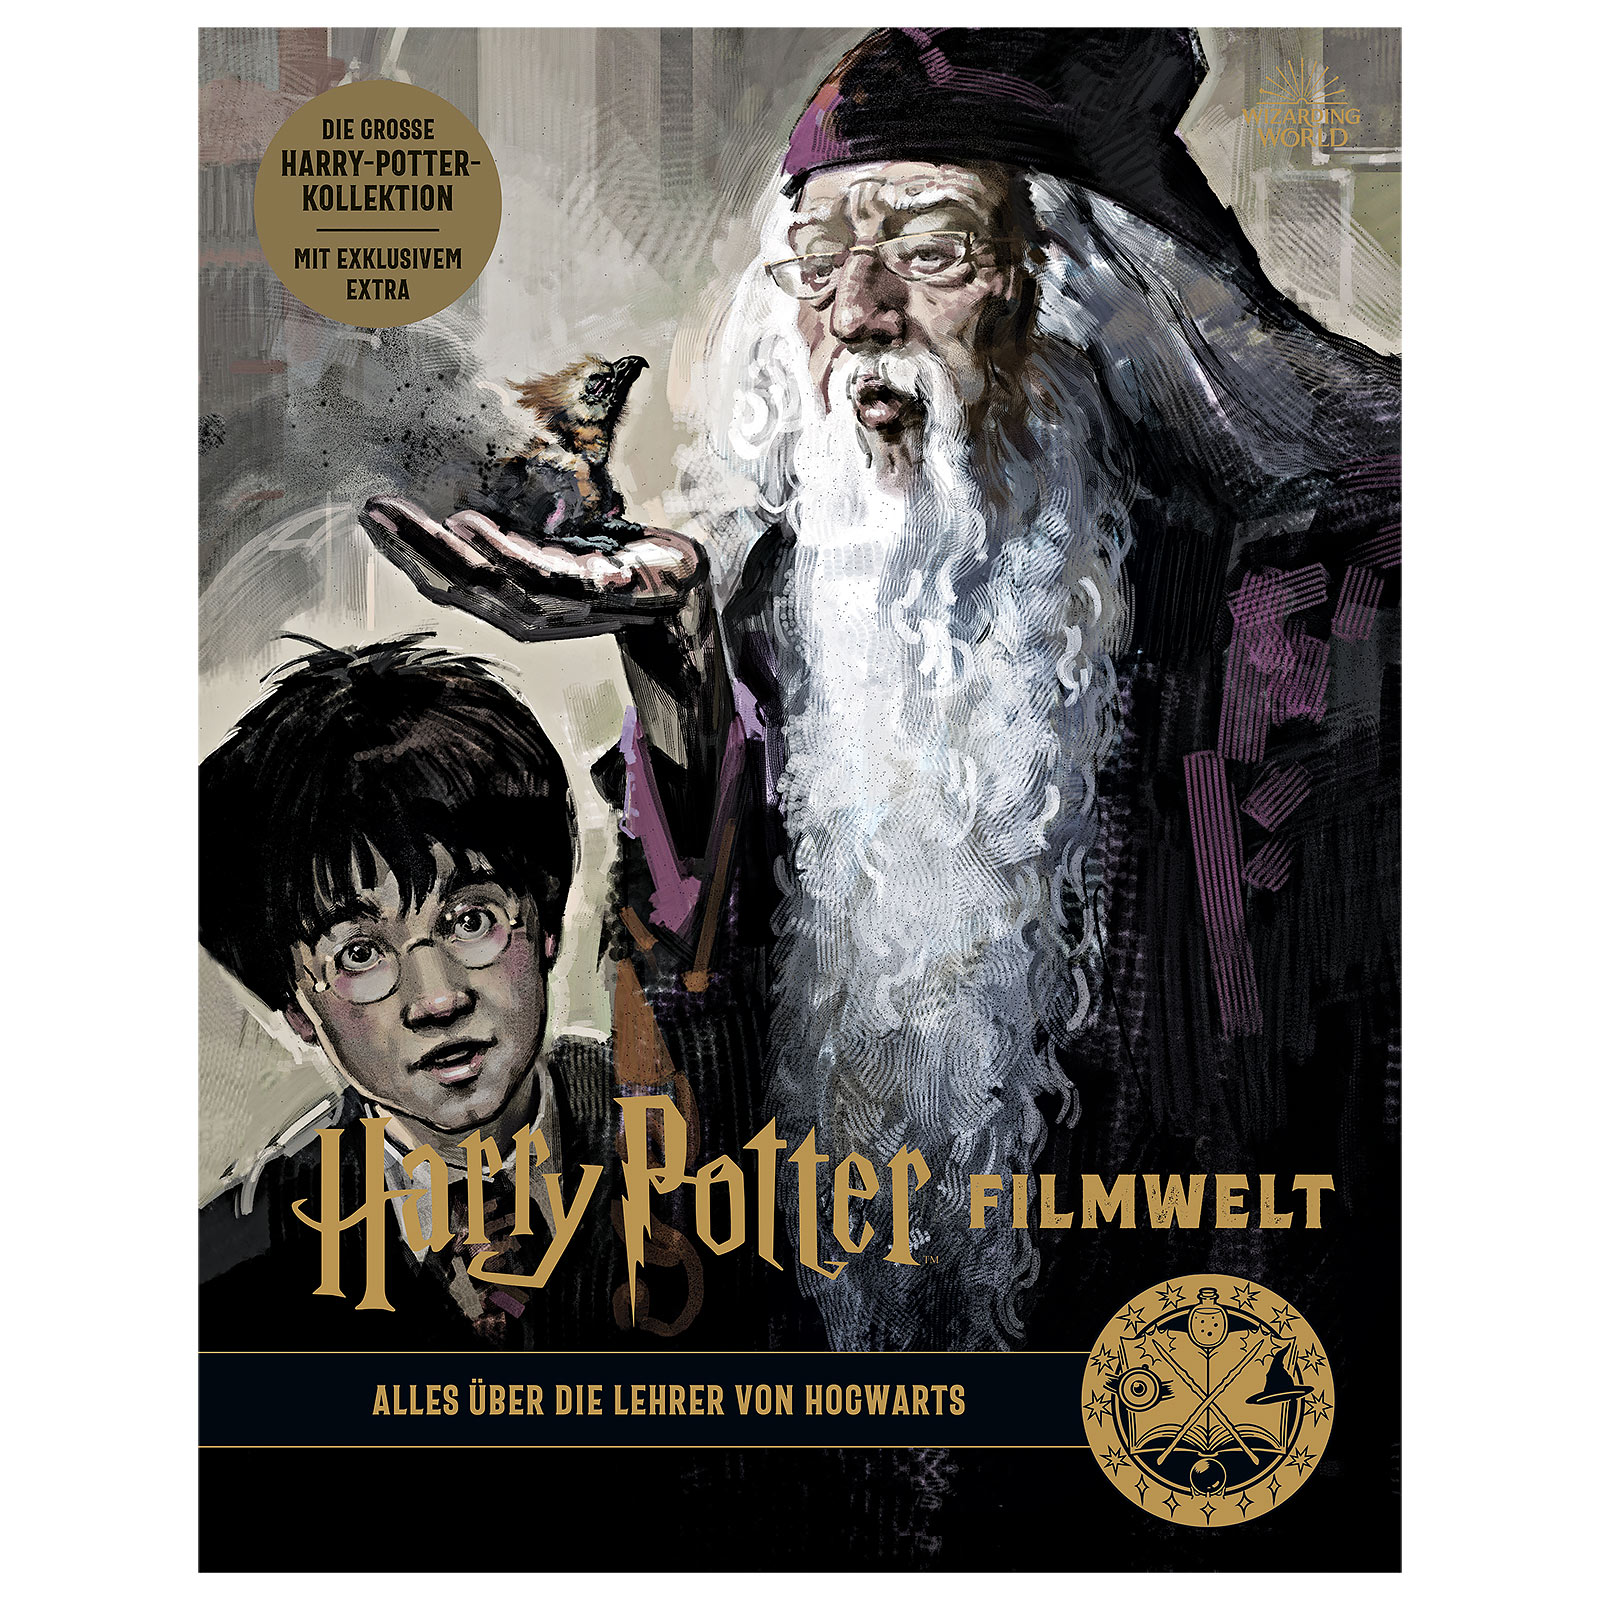 Harry Potter Filmwelt - Alles über die Lehrer von Hogwarts